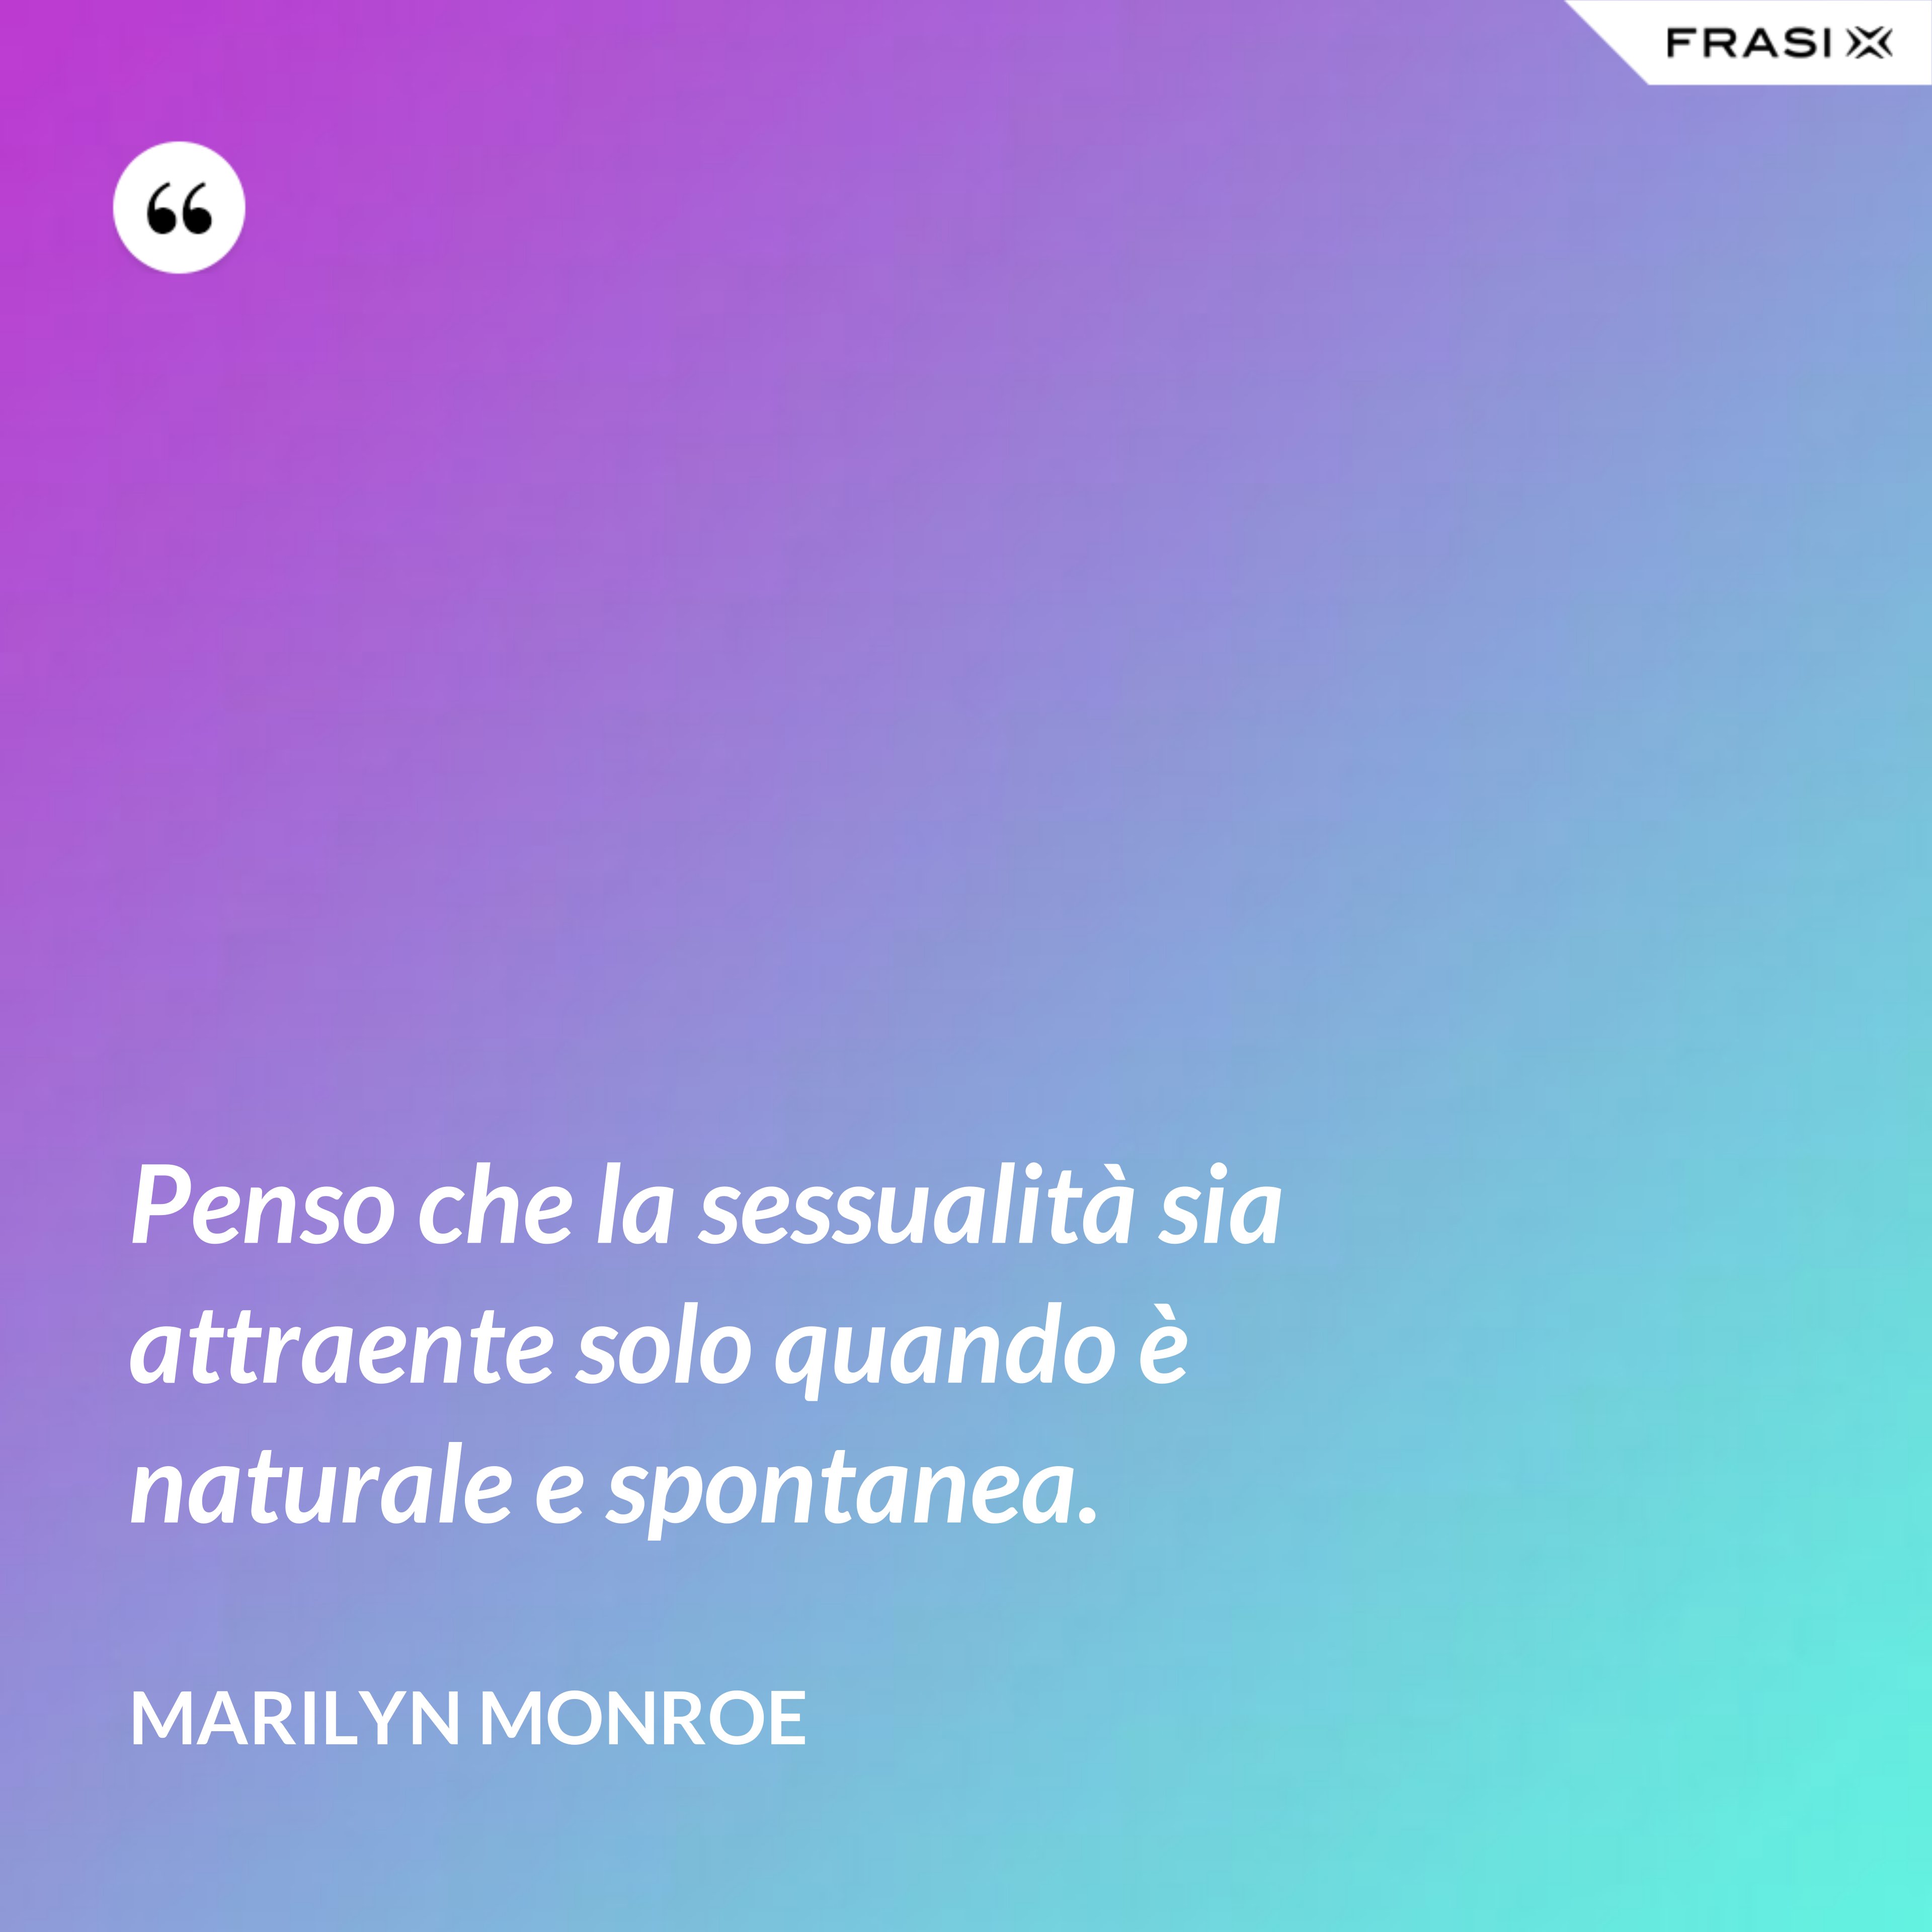 Penso che la sessualità sia attraente solo quando è naturale e spontanea. - Marilyn Monroe